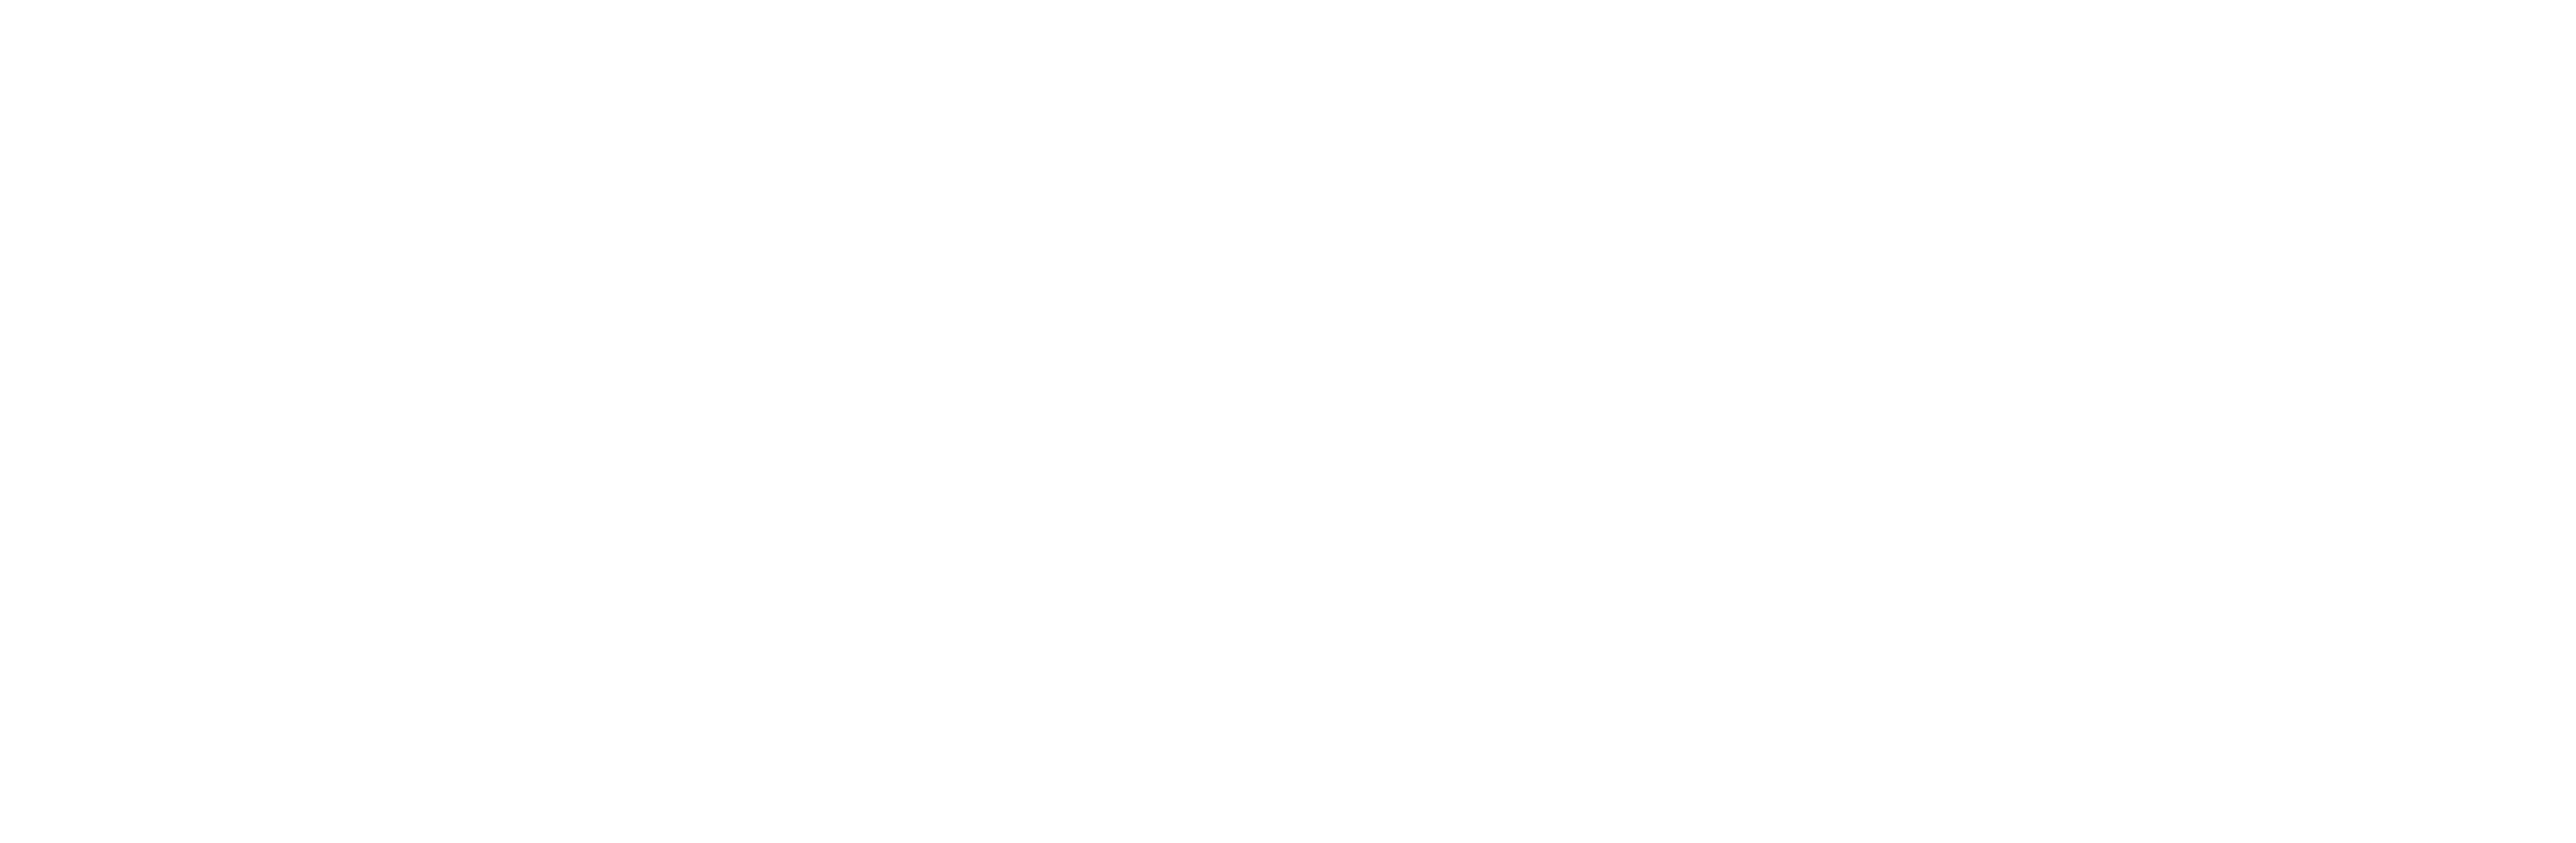 логотип teeth